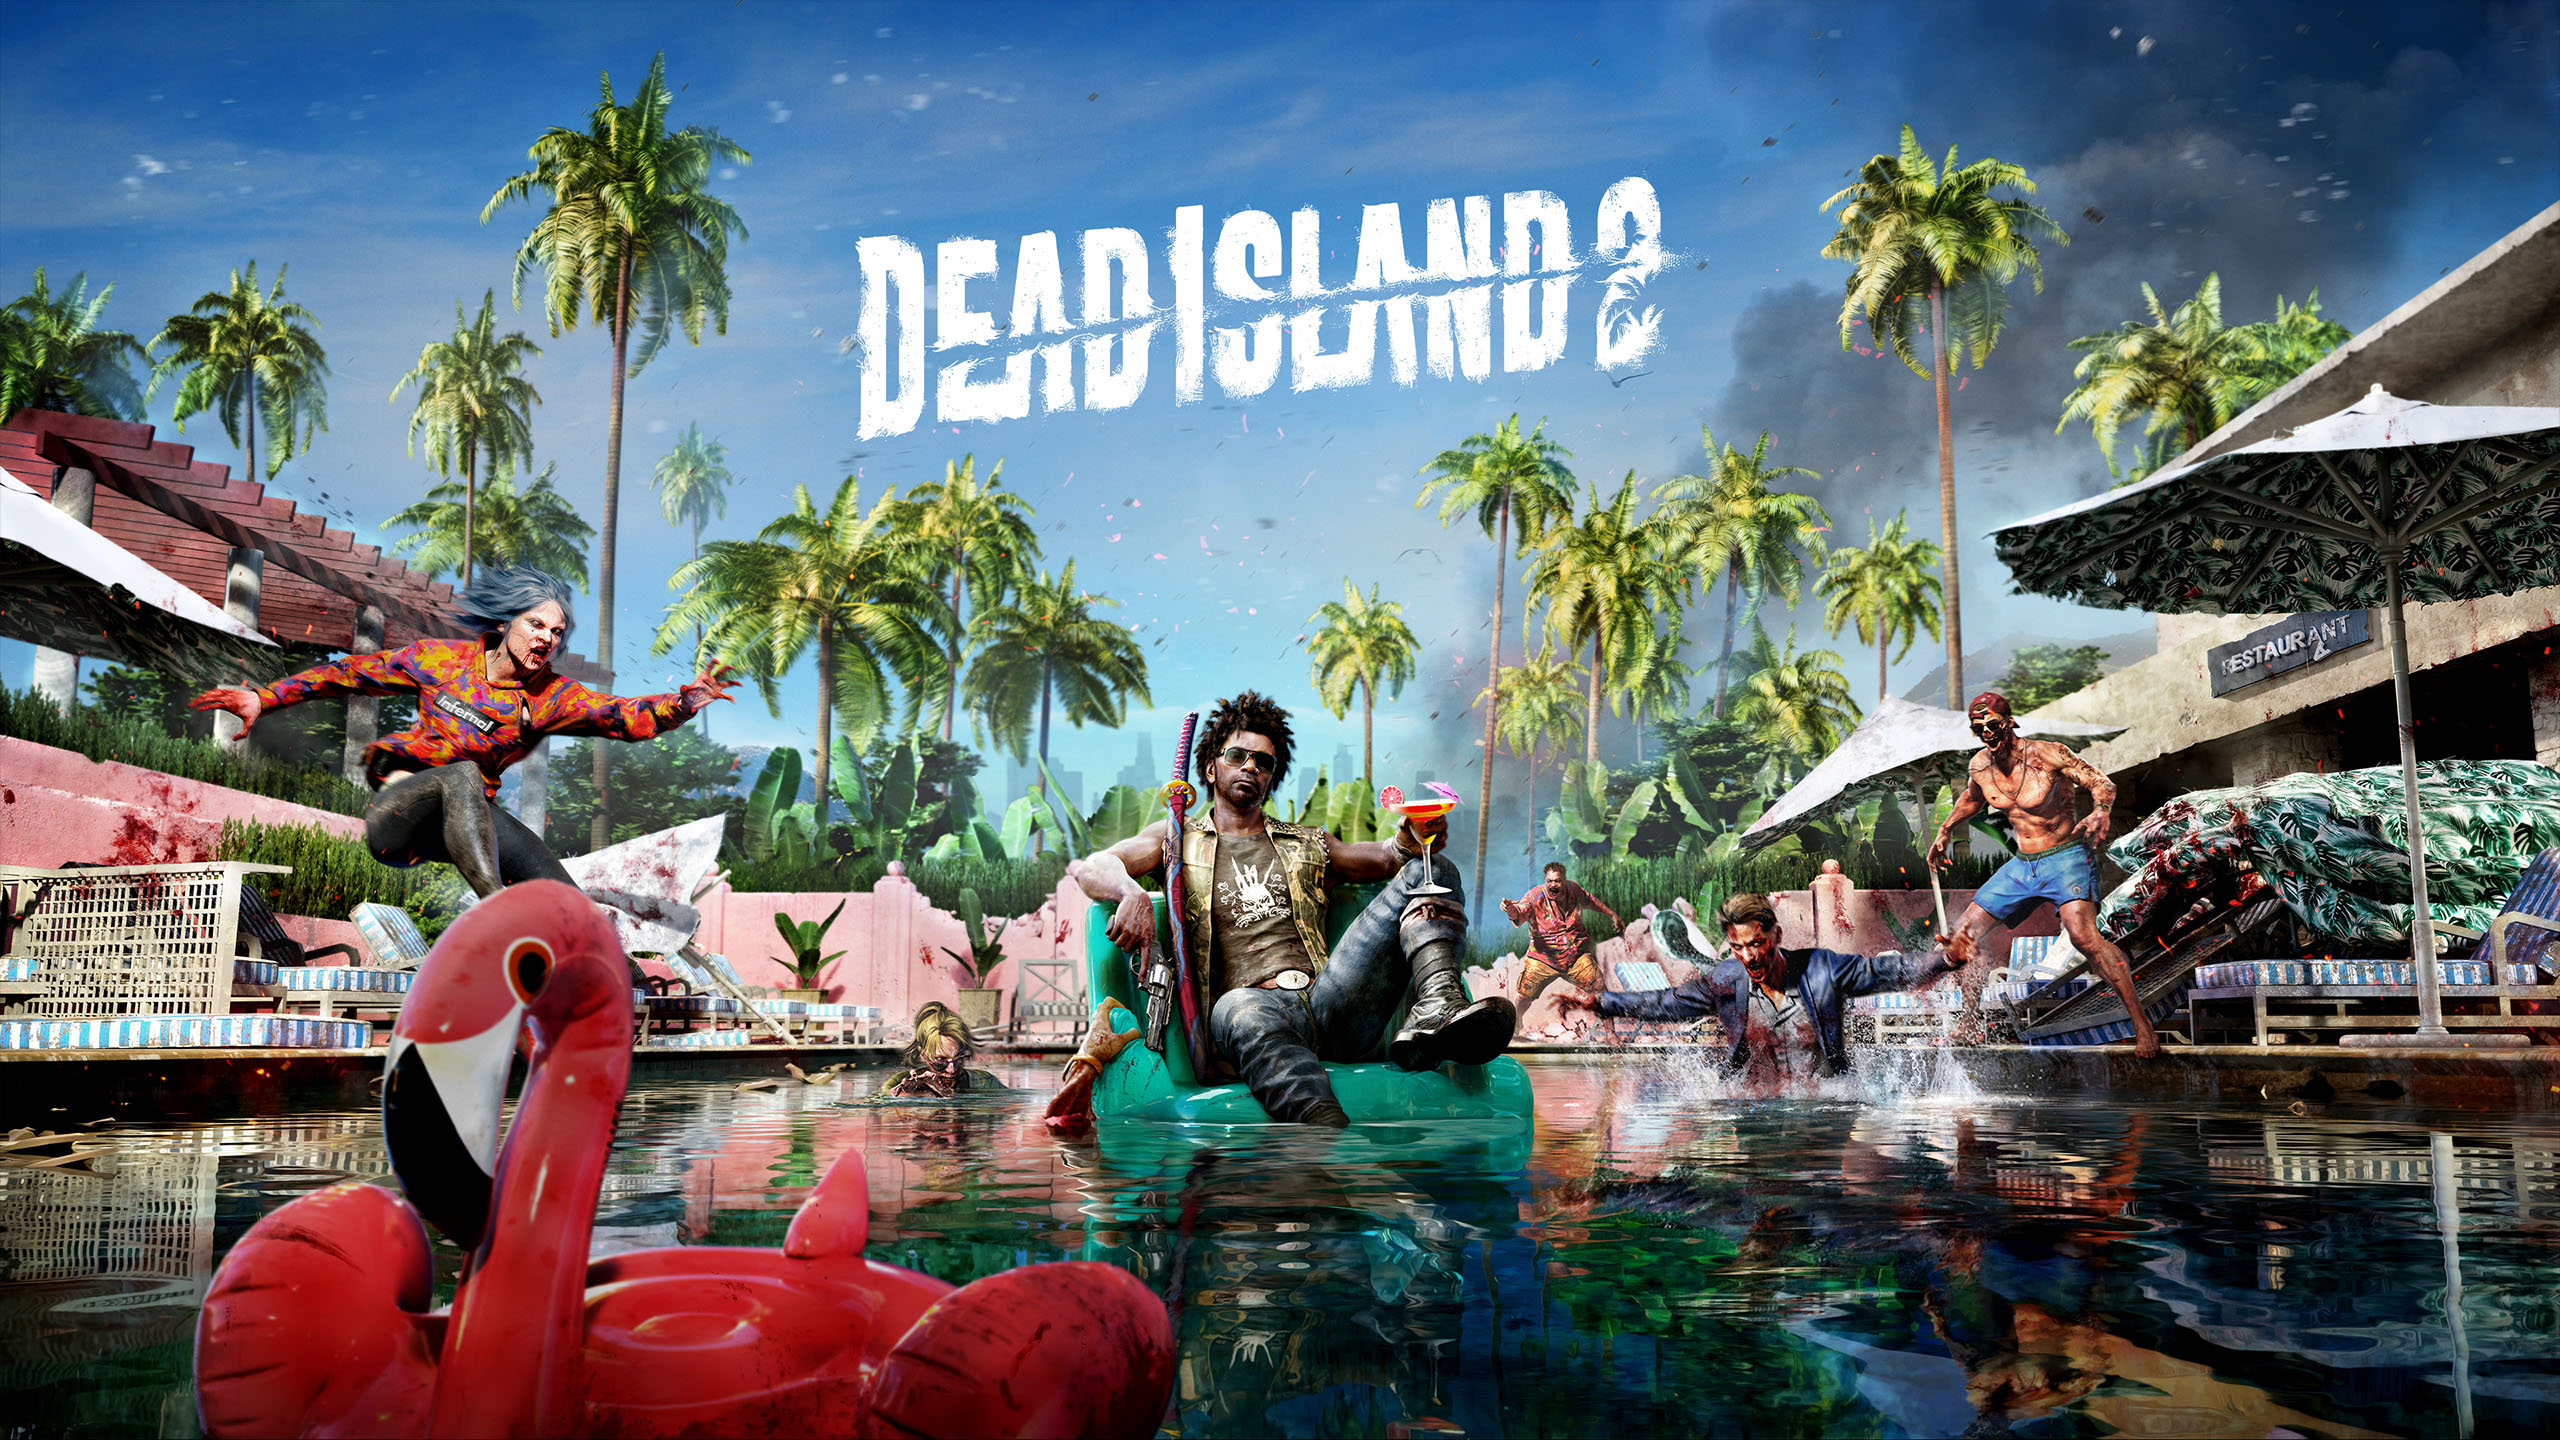 Le nombre d'exemplaires de Dead Island 2 vendus en trois jours a franchi la barre du million d'exemplaires 